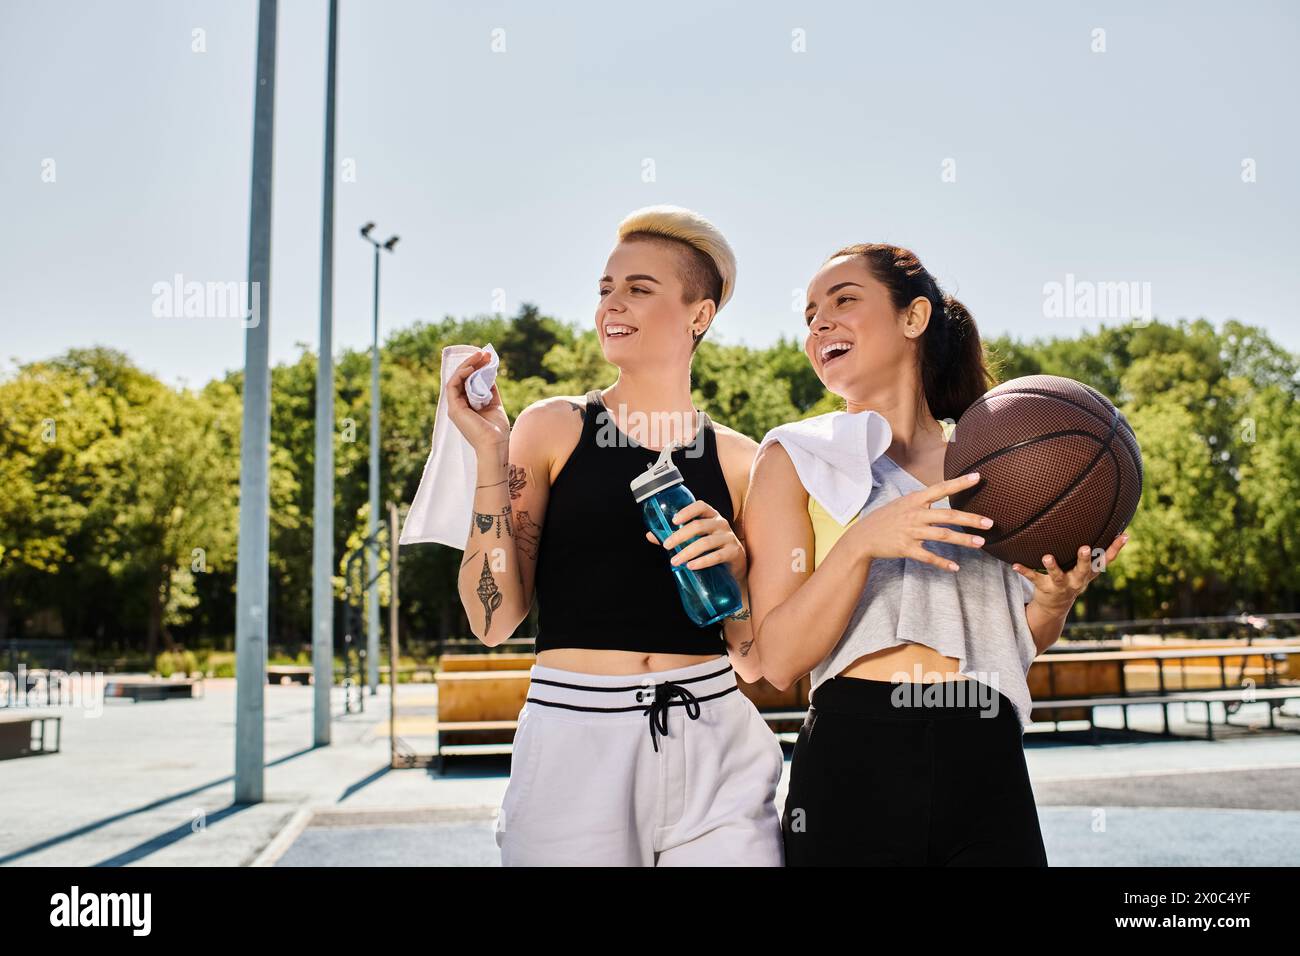 Deux amies sportives debout ensemble, tenant des ballons de basket dans un cadre extérieur d'été. Banque D'Images